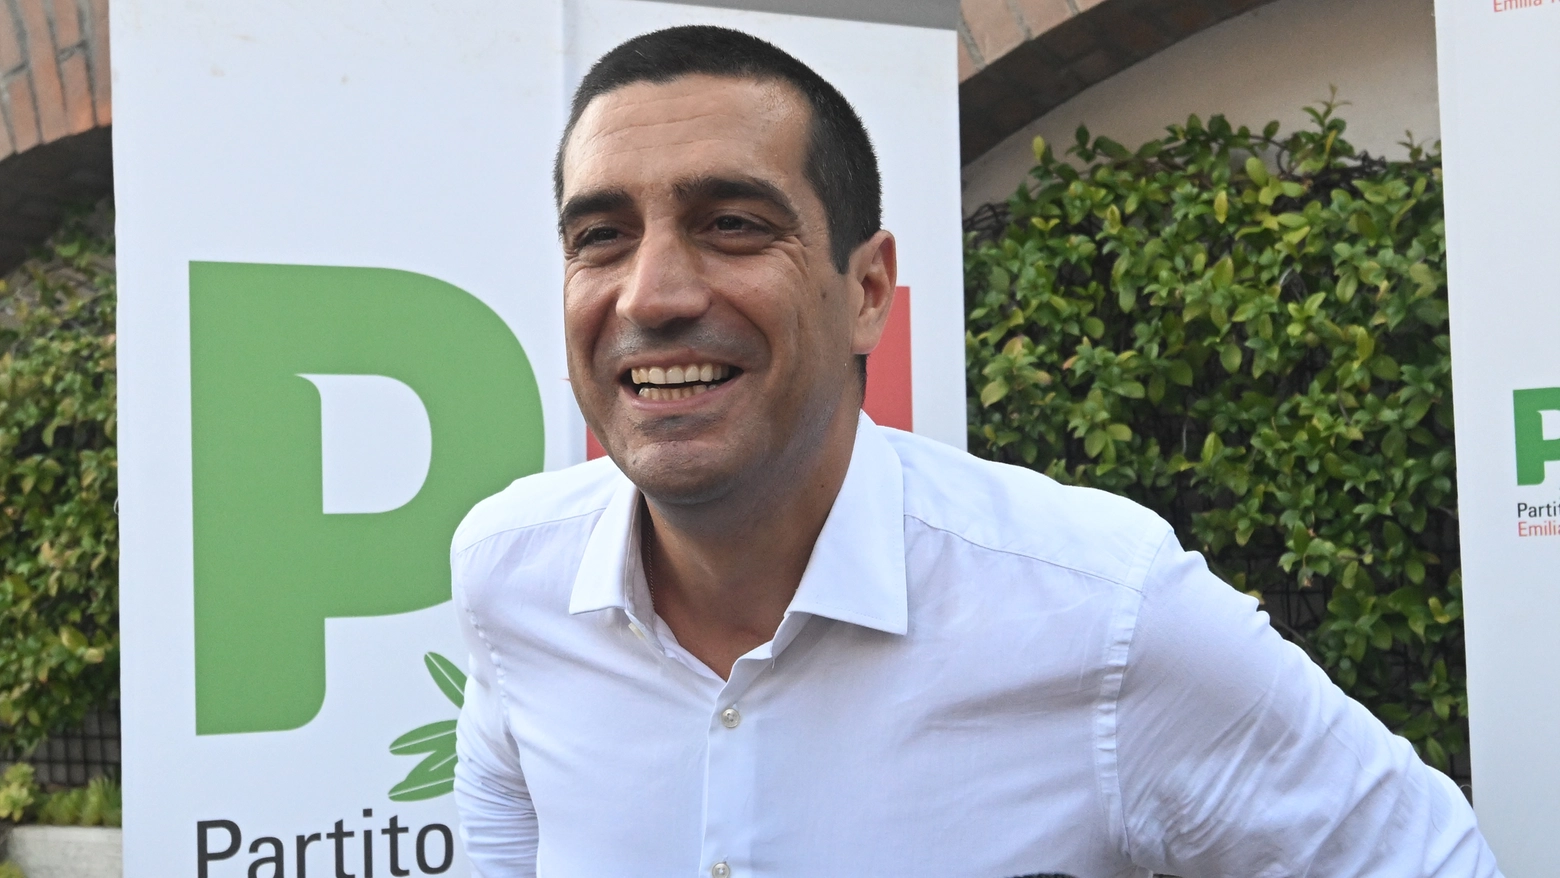 Per scegliere il successore di Bonaccini si voterà il 24 novembre. Il sindaco di Ravenna: “La prima cosa da fare è costruire la coalizione, i partiti li sto sentendo già da tempo, sarà importante costruire un programma insieme”